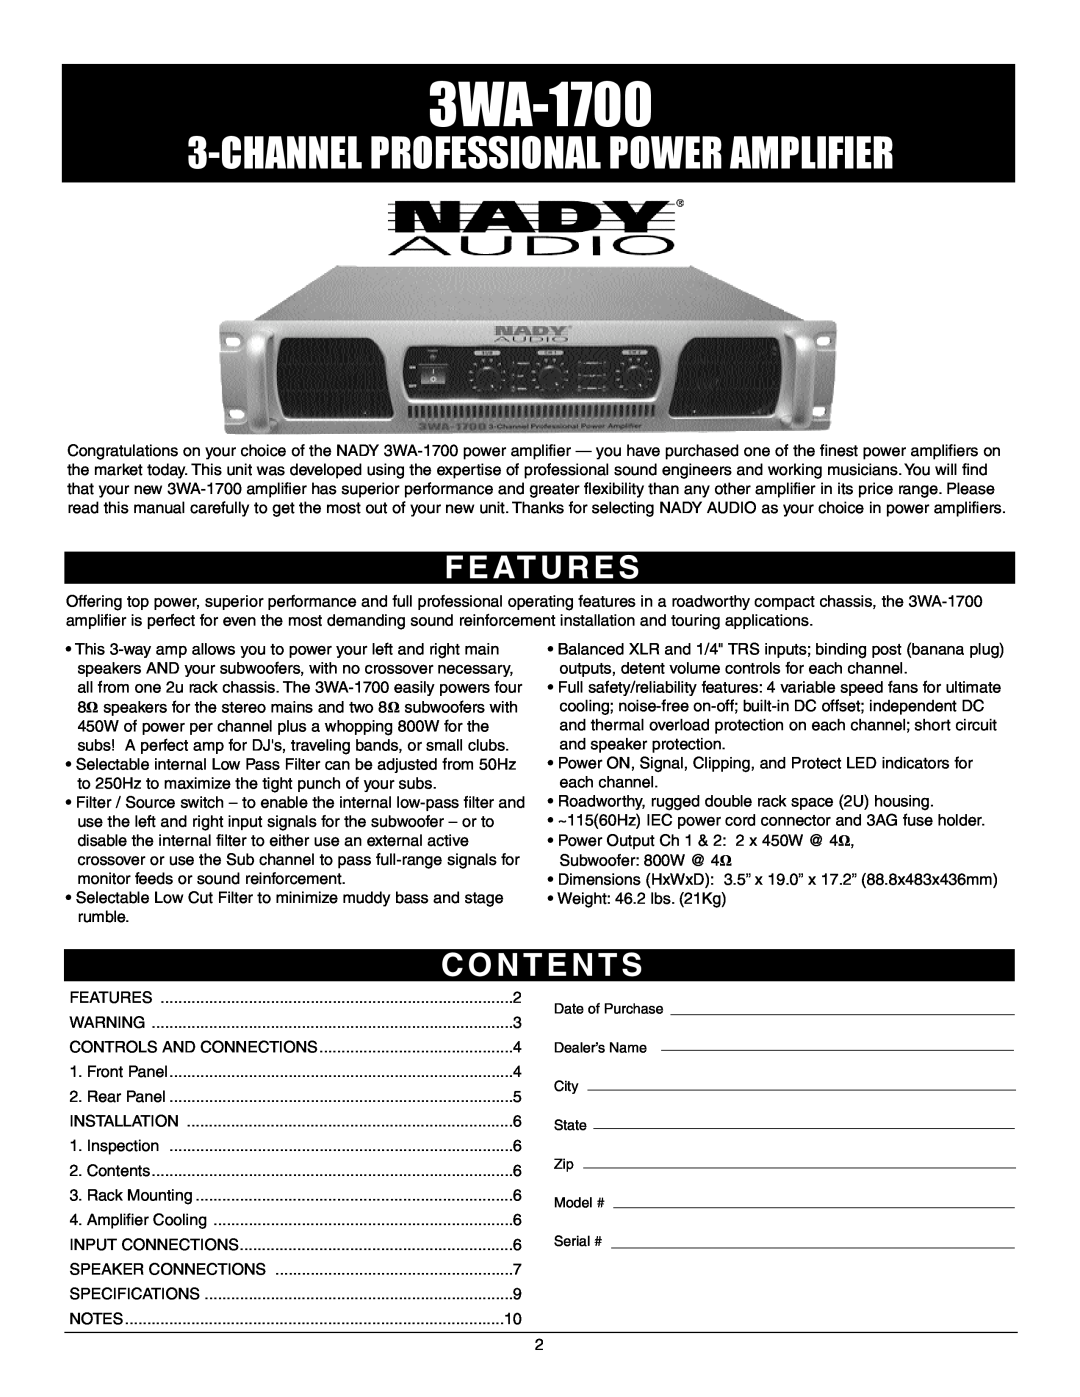 Nady Systems 3WA1700 owner manual F E At U R E S, C O N T E N T S, 3WA-1700, Channelprofessional Power Amplifier 